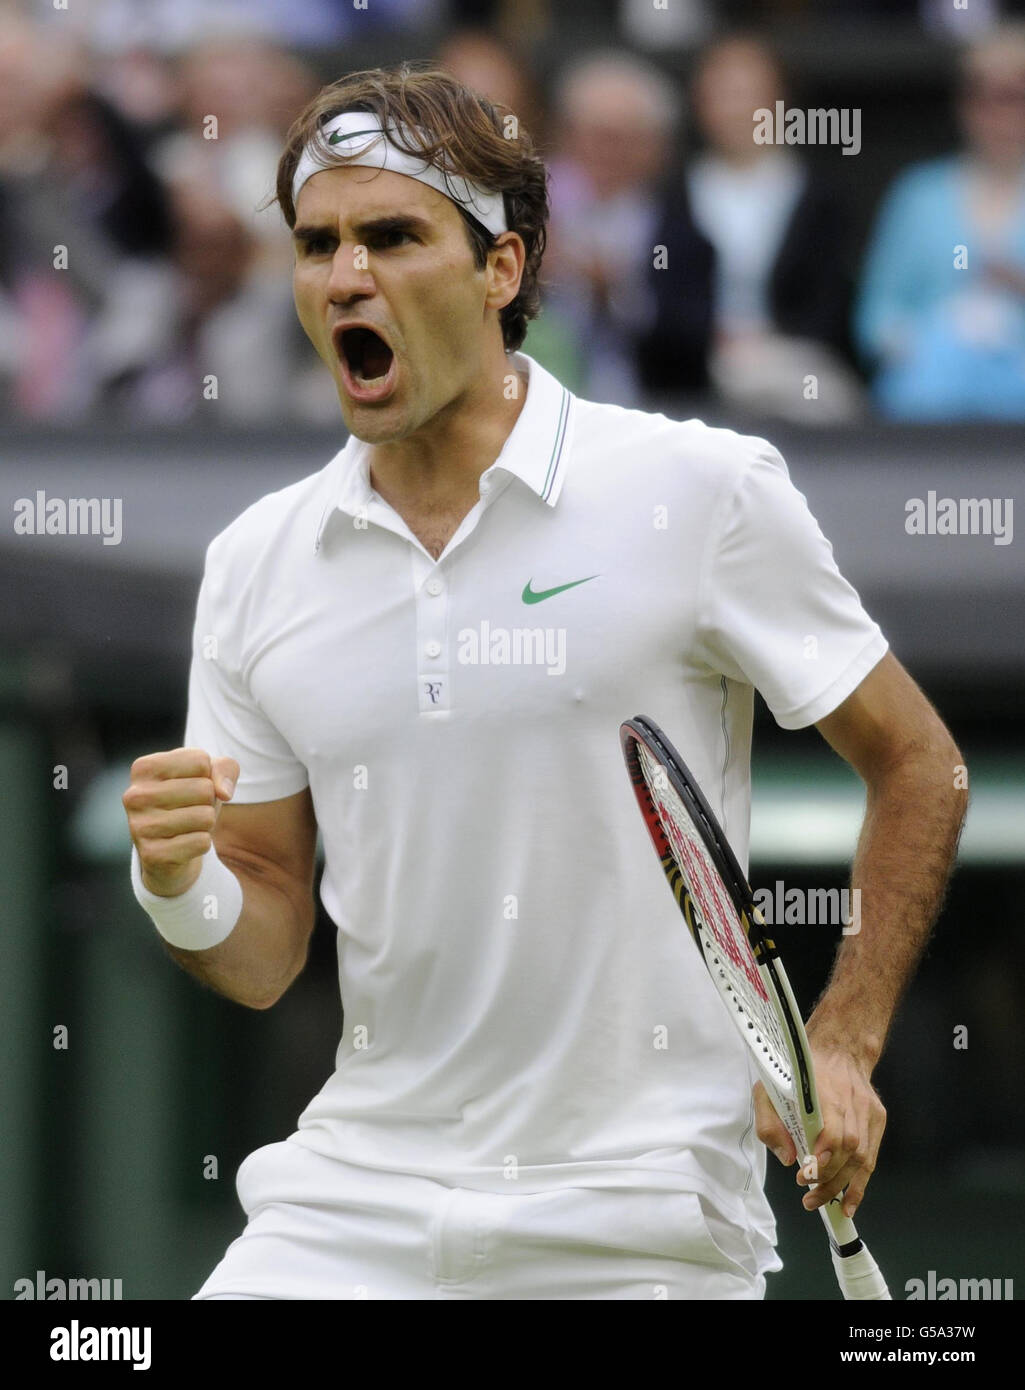 Roger Federer, in Svizzera, celebra la vittoria del terzo set durante l'undici° giorno dei Campionati Wimbledon 2012 presso l'All England Lawn Tennis Club di Wimbledon. Foto Stock